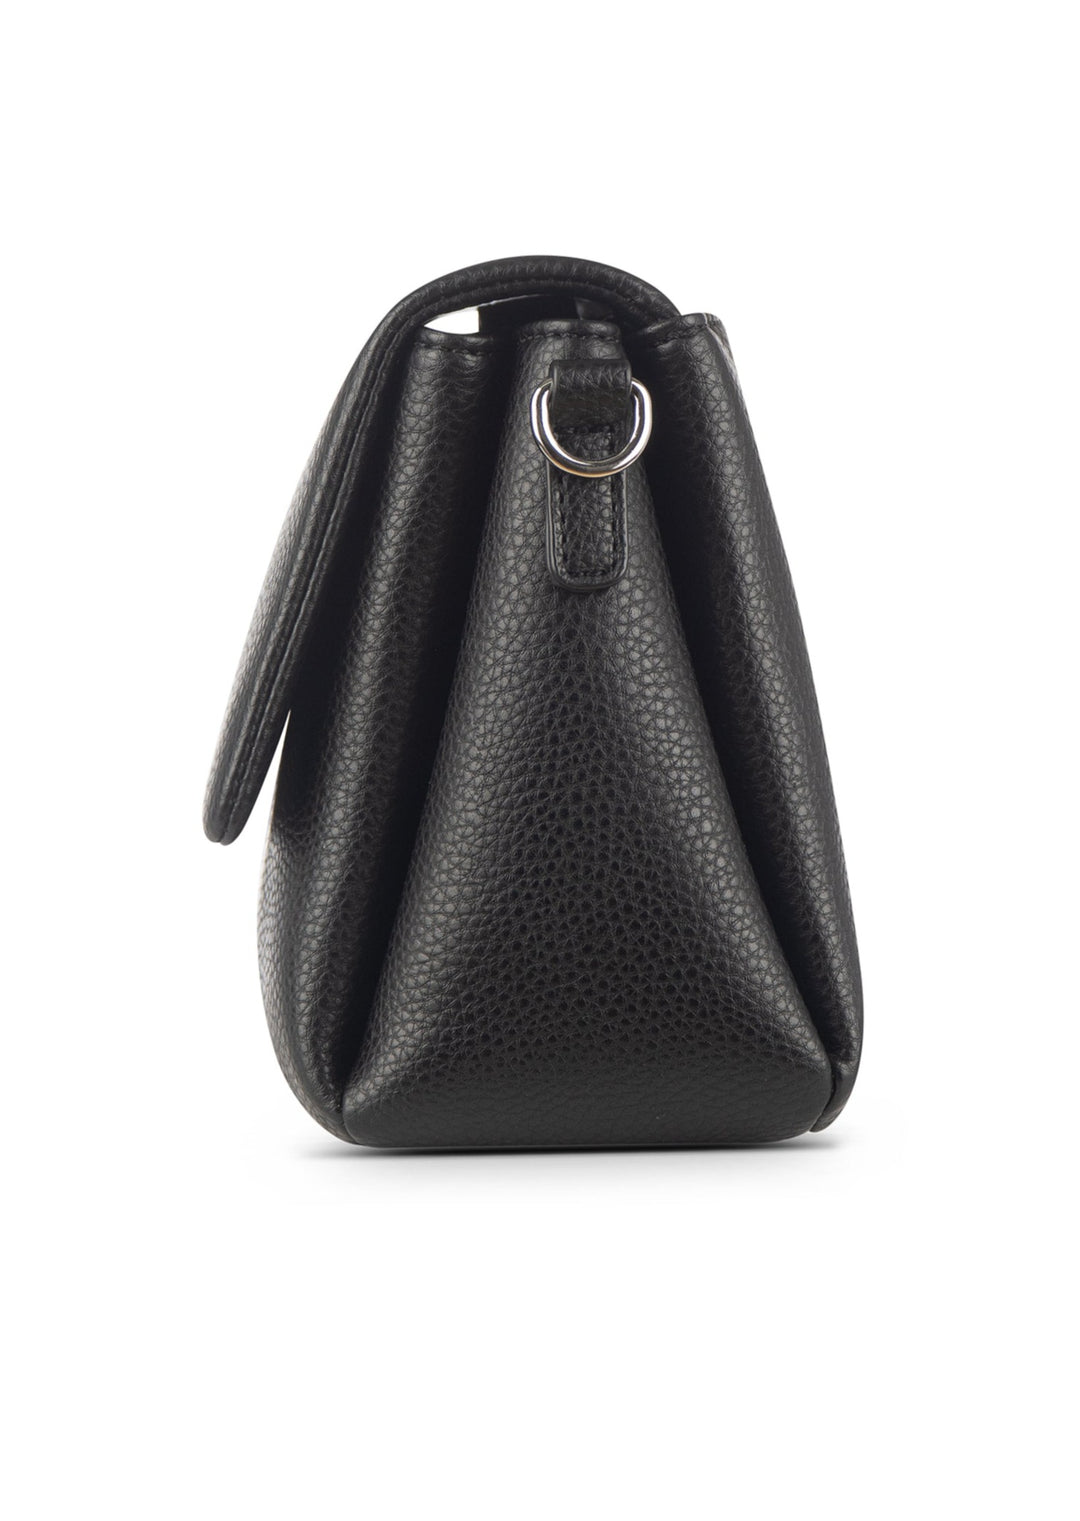 Lambert - The Judy Vegan Leather Shoulder Bag